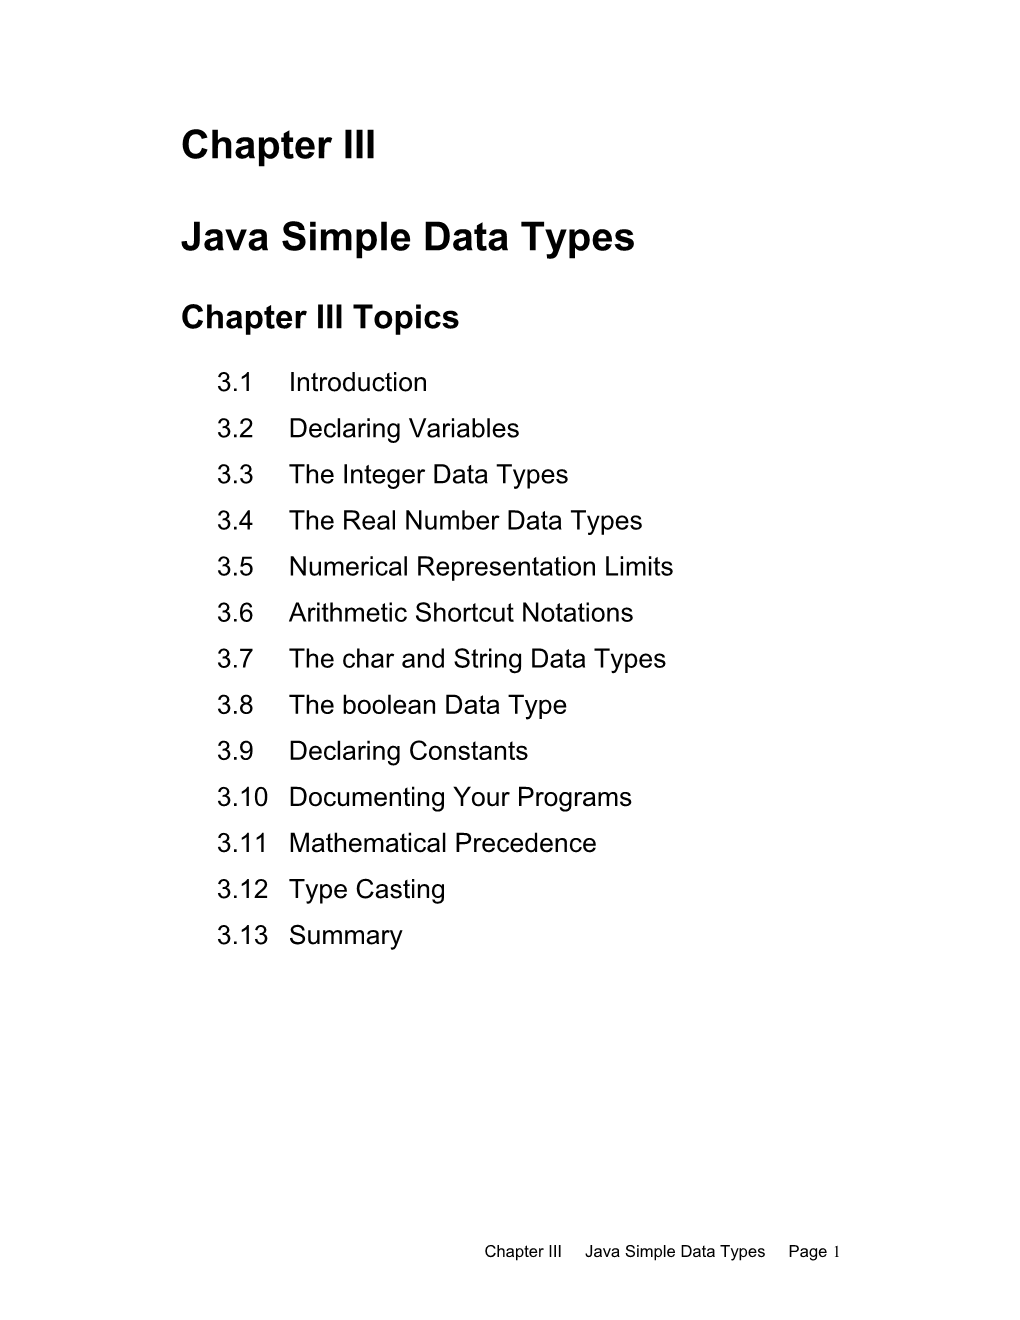 Java Simple Data Types